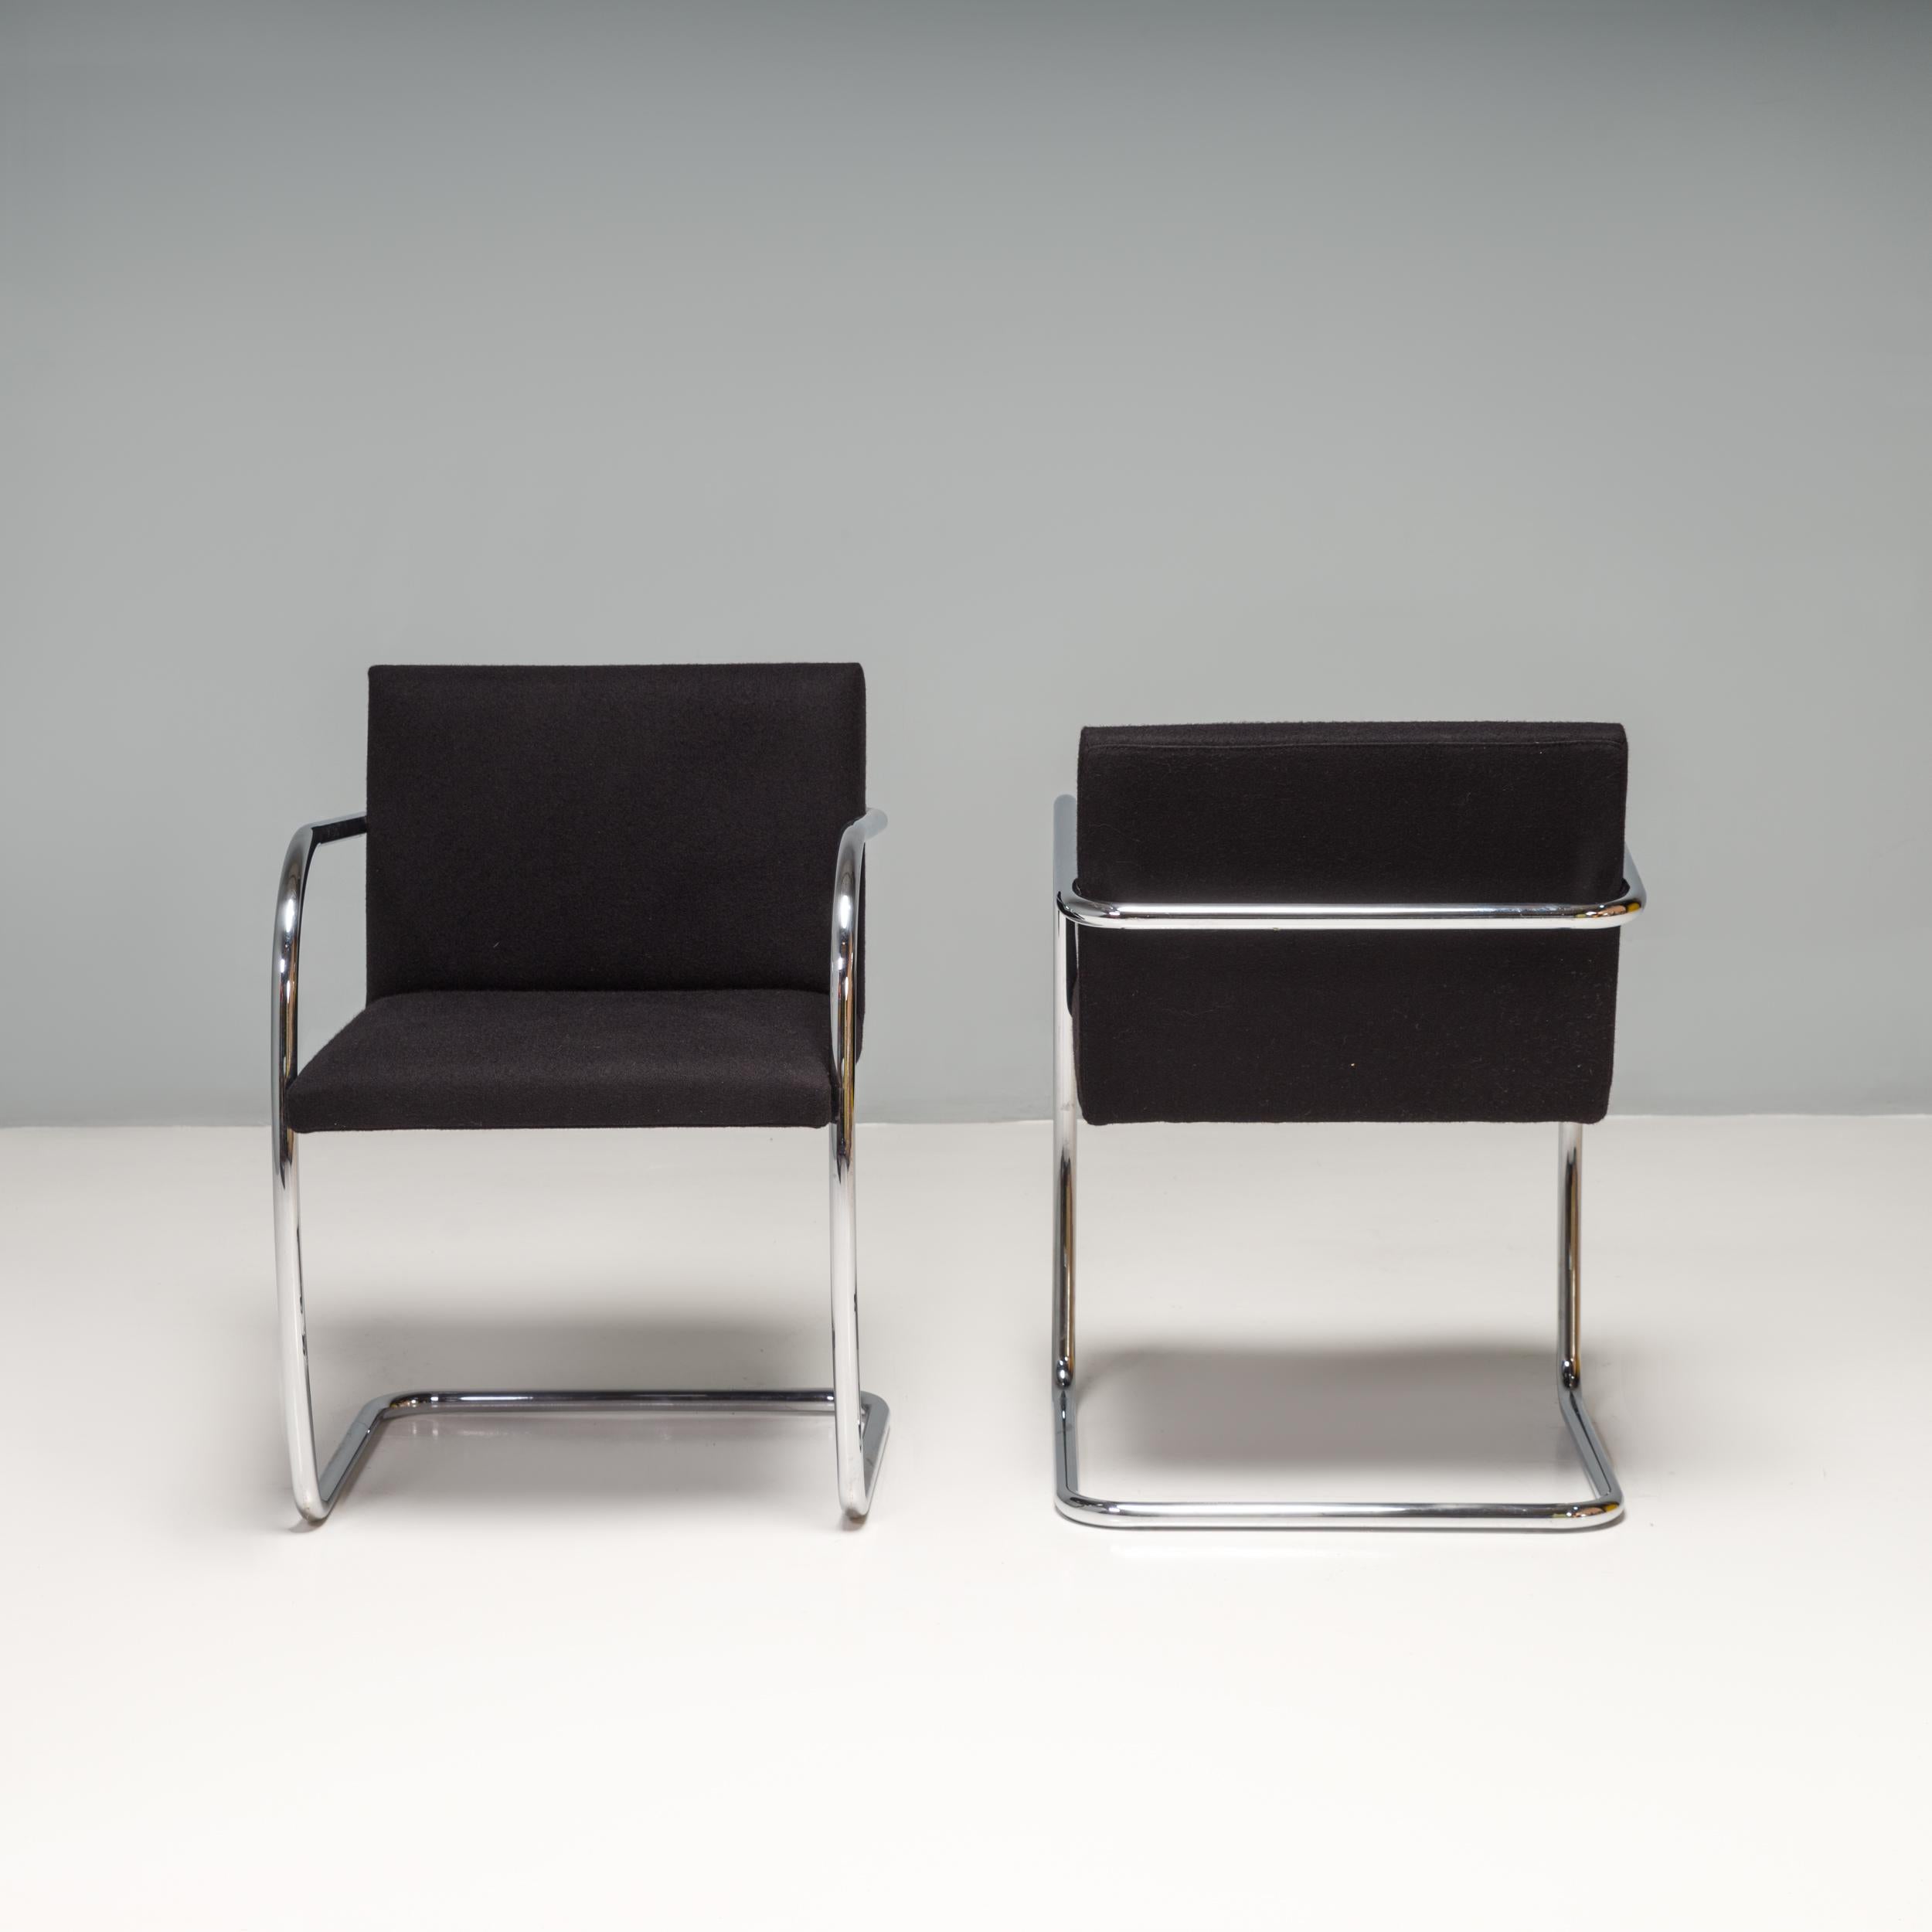 Conçue à l'origine par Mies van der Rohe en 1930 pour sa maison de Brno, en République tchèque, la chaise Brno reste une icône du design. 

Élégantes et simples, ces chaises luge sont revêtues de tissu noir et présentent des cadres tubulaires